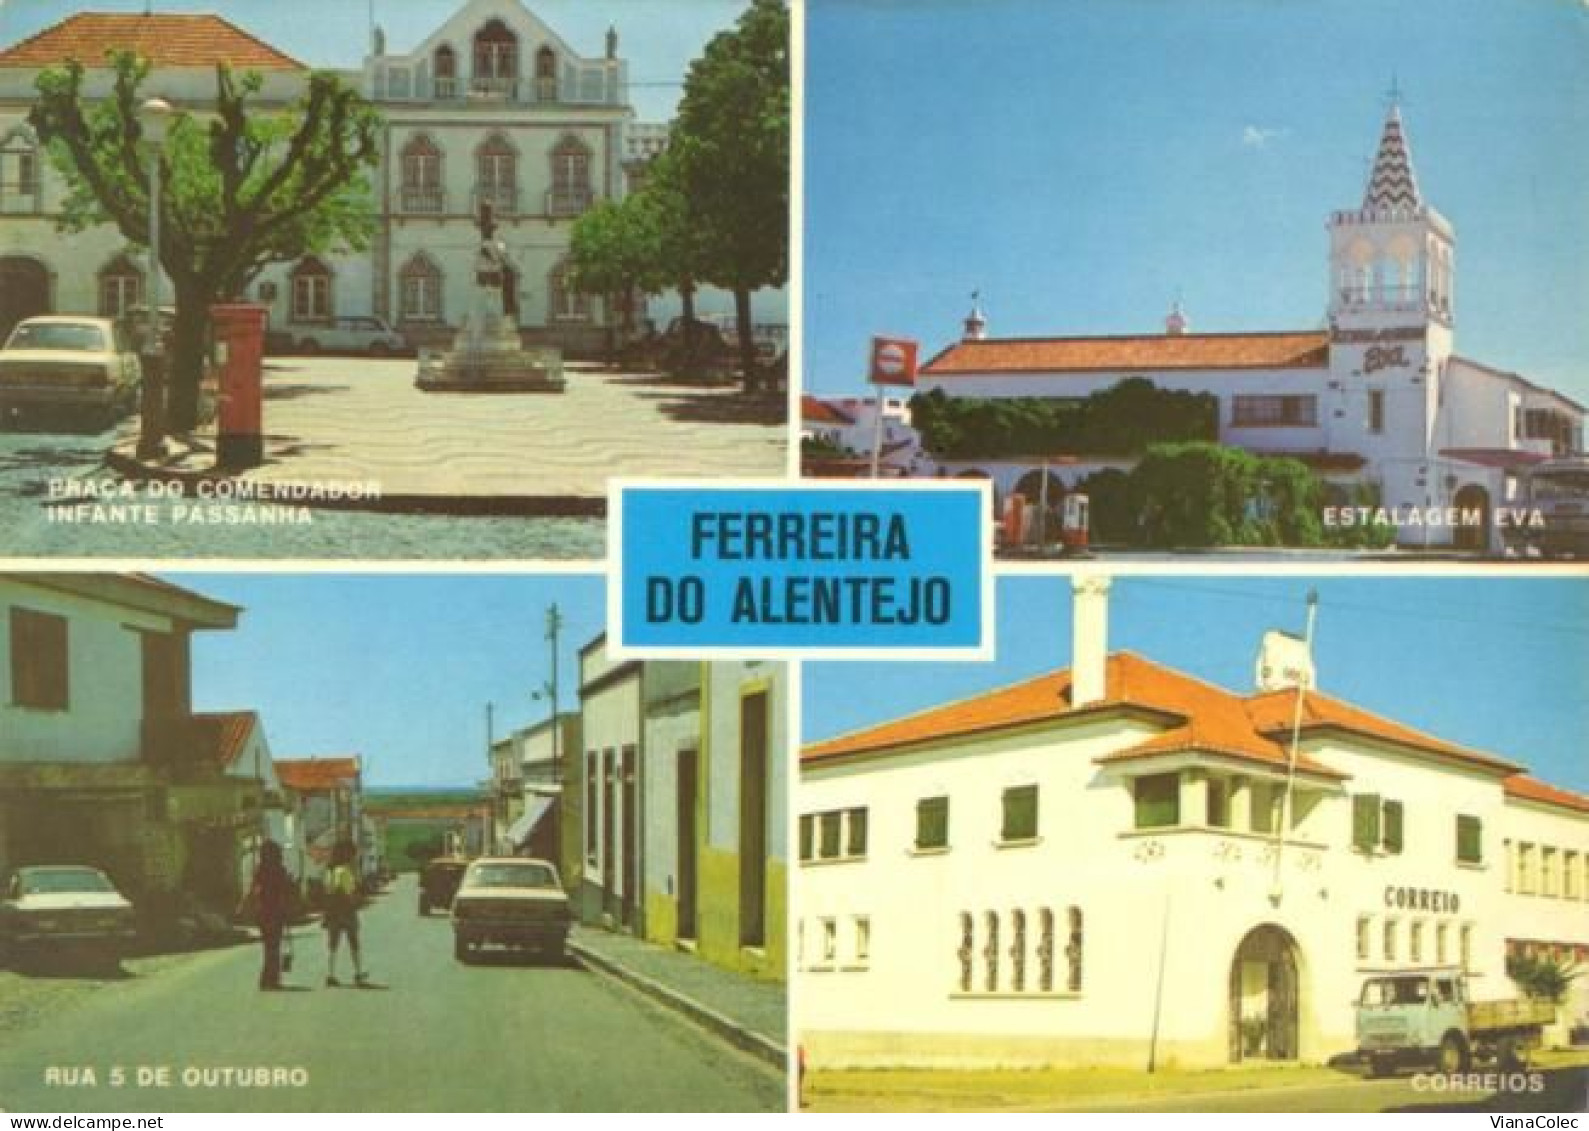 Ferreira Do Alentejo - Correios / Estalagem Eva / Praça Comendador Infante Pessanha / Rua 5 De Outubro - Beja